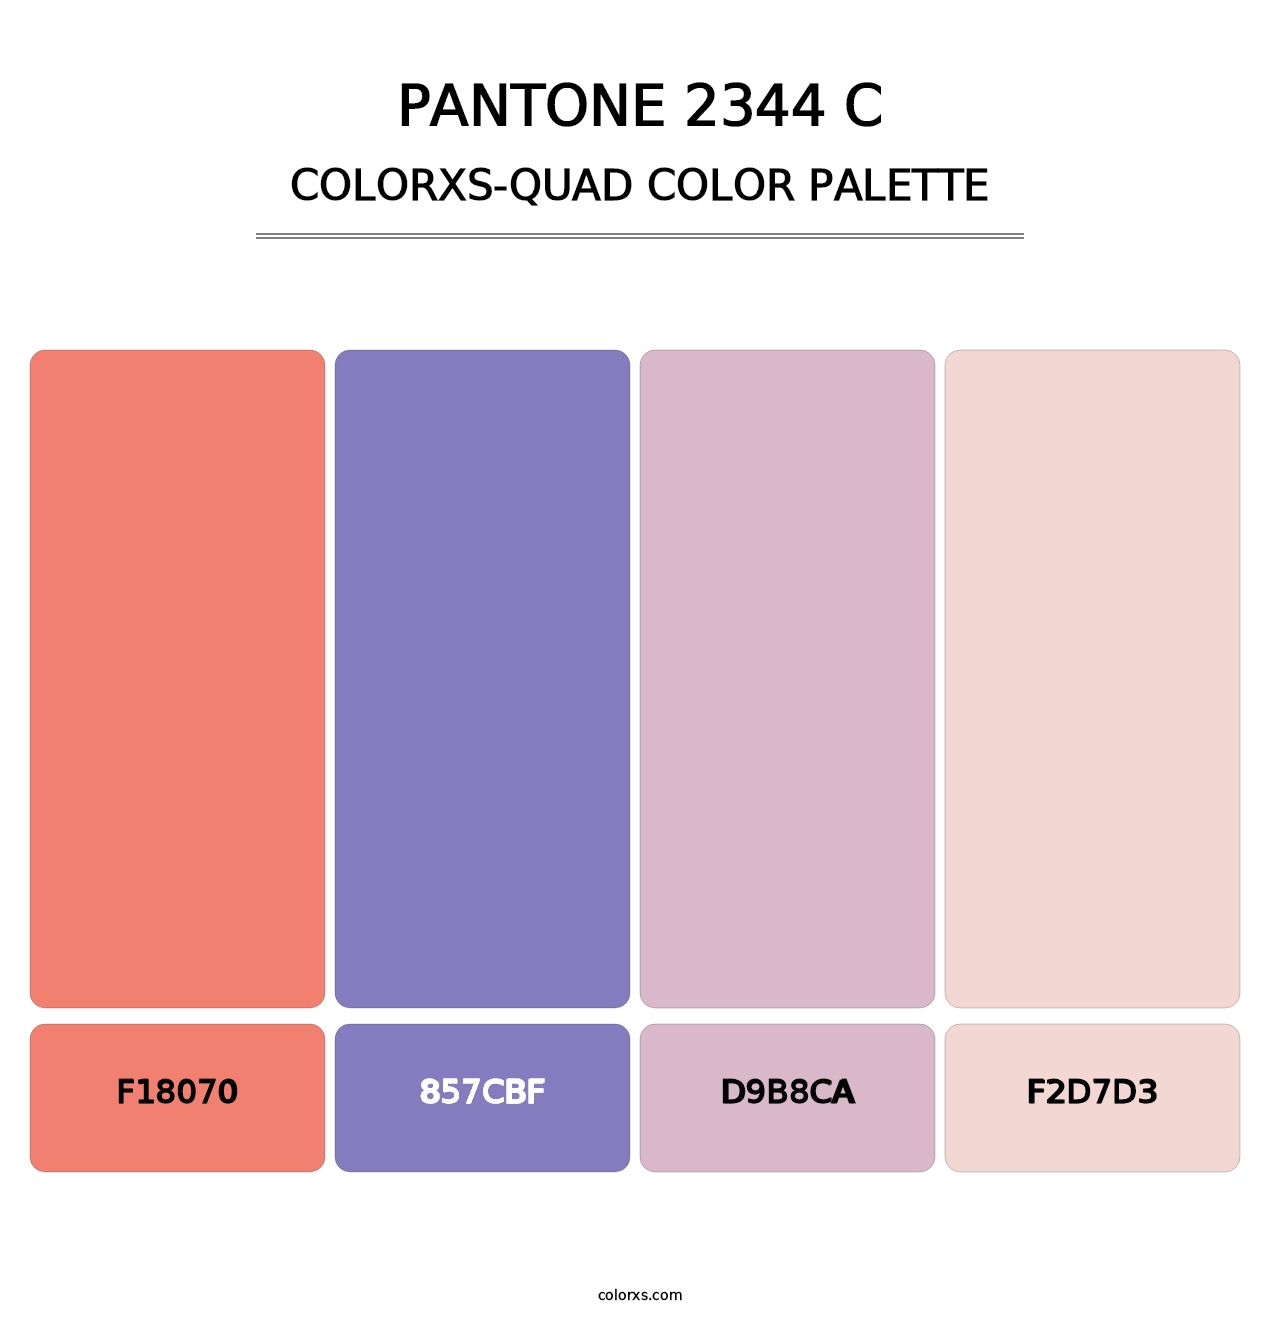 PANTONE 2344 C - Colorxs Quad Palette